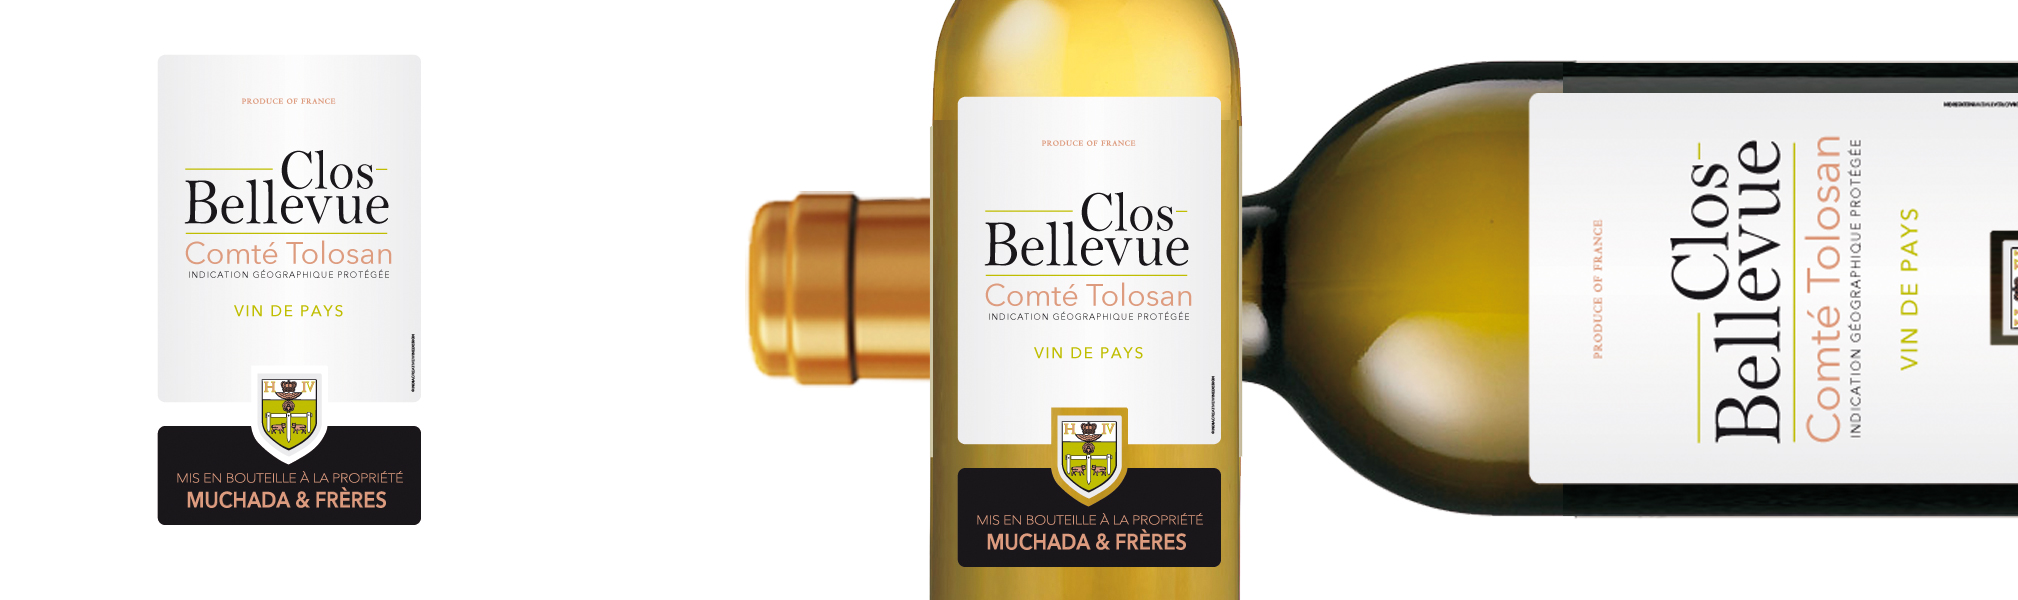 Clos Bellevue - Comté Tolosan Vin de Pays